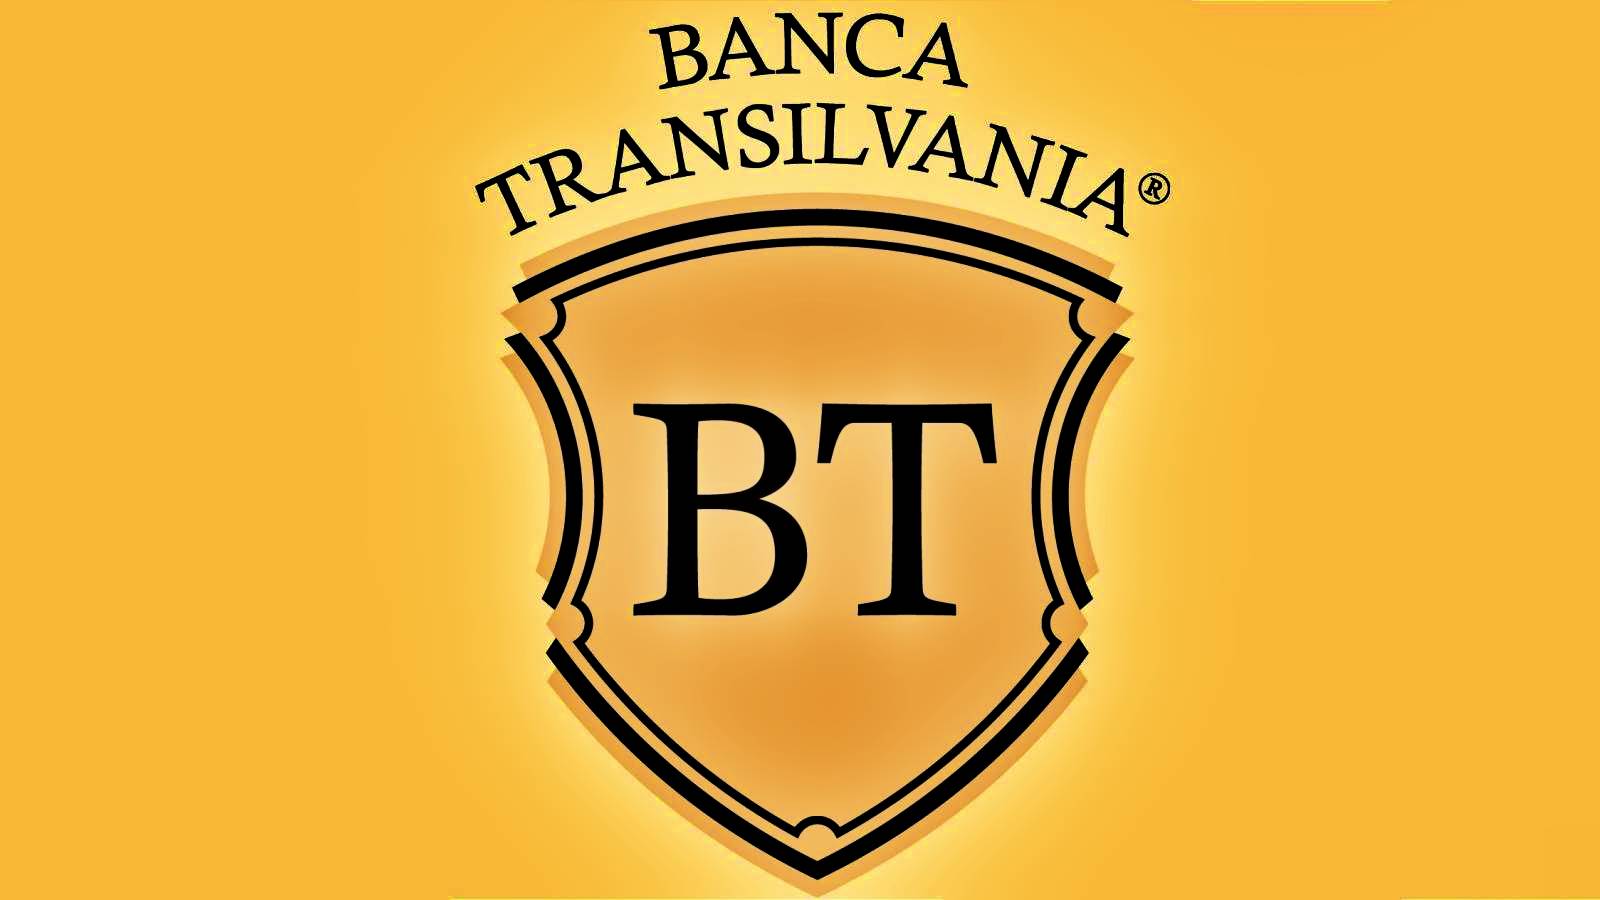 BANCA Transilvania Het OFFICIËLE bericht is gericht op klanten die ze niet kenden